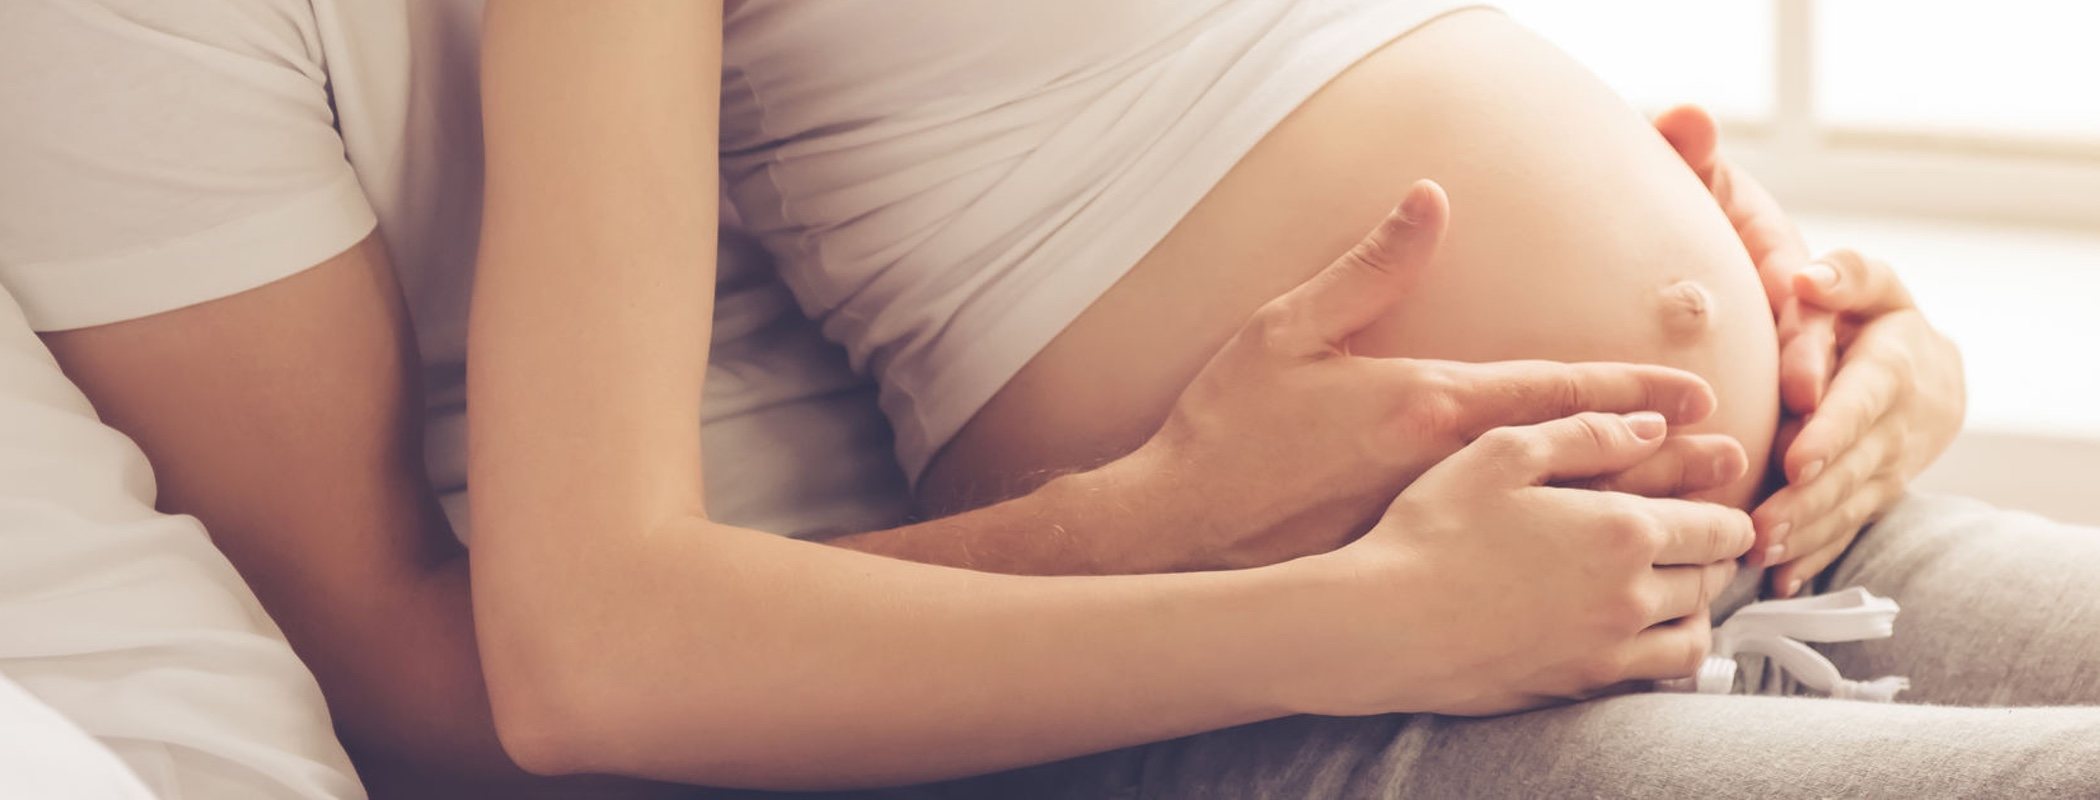 Mitos sobre las relaciones sexuales durante el embarazo